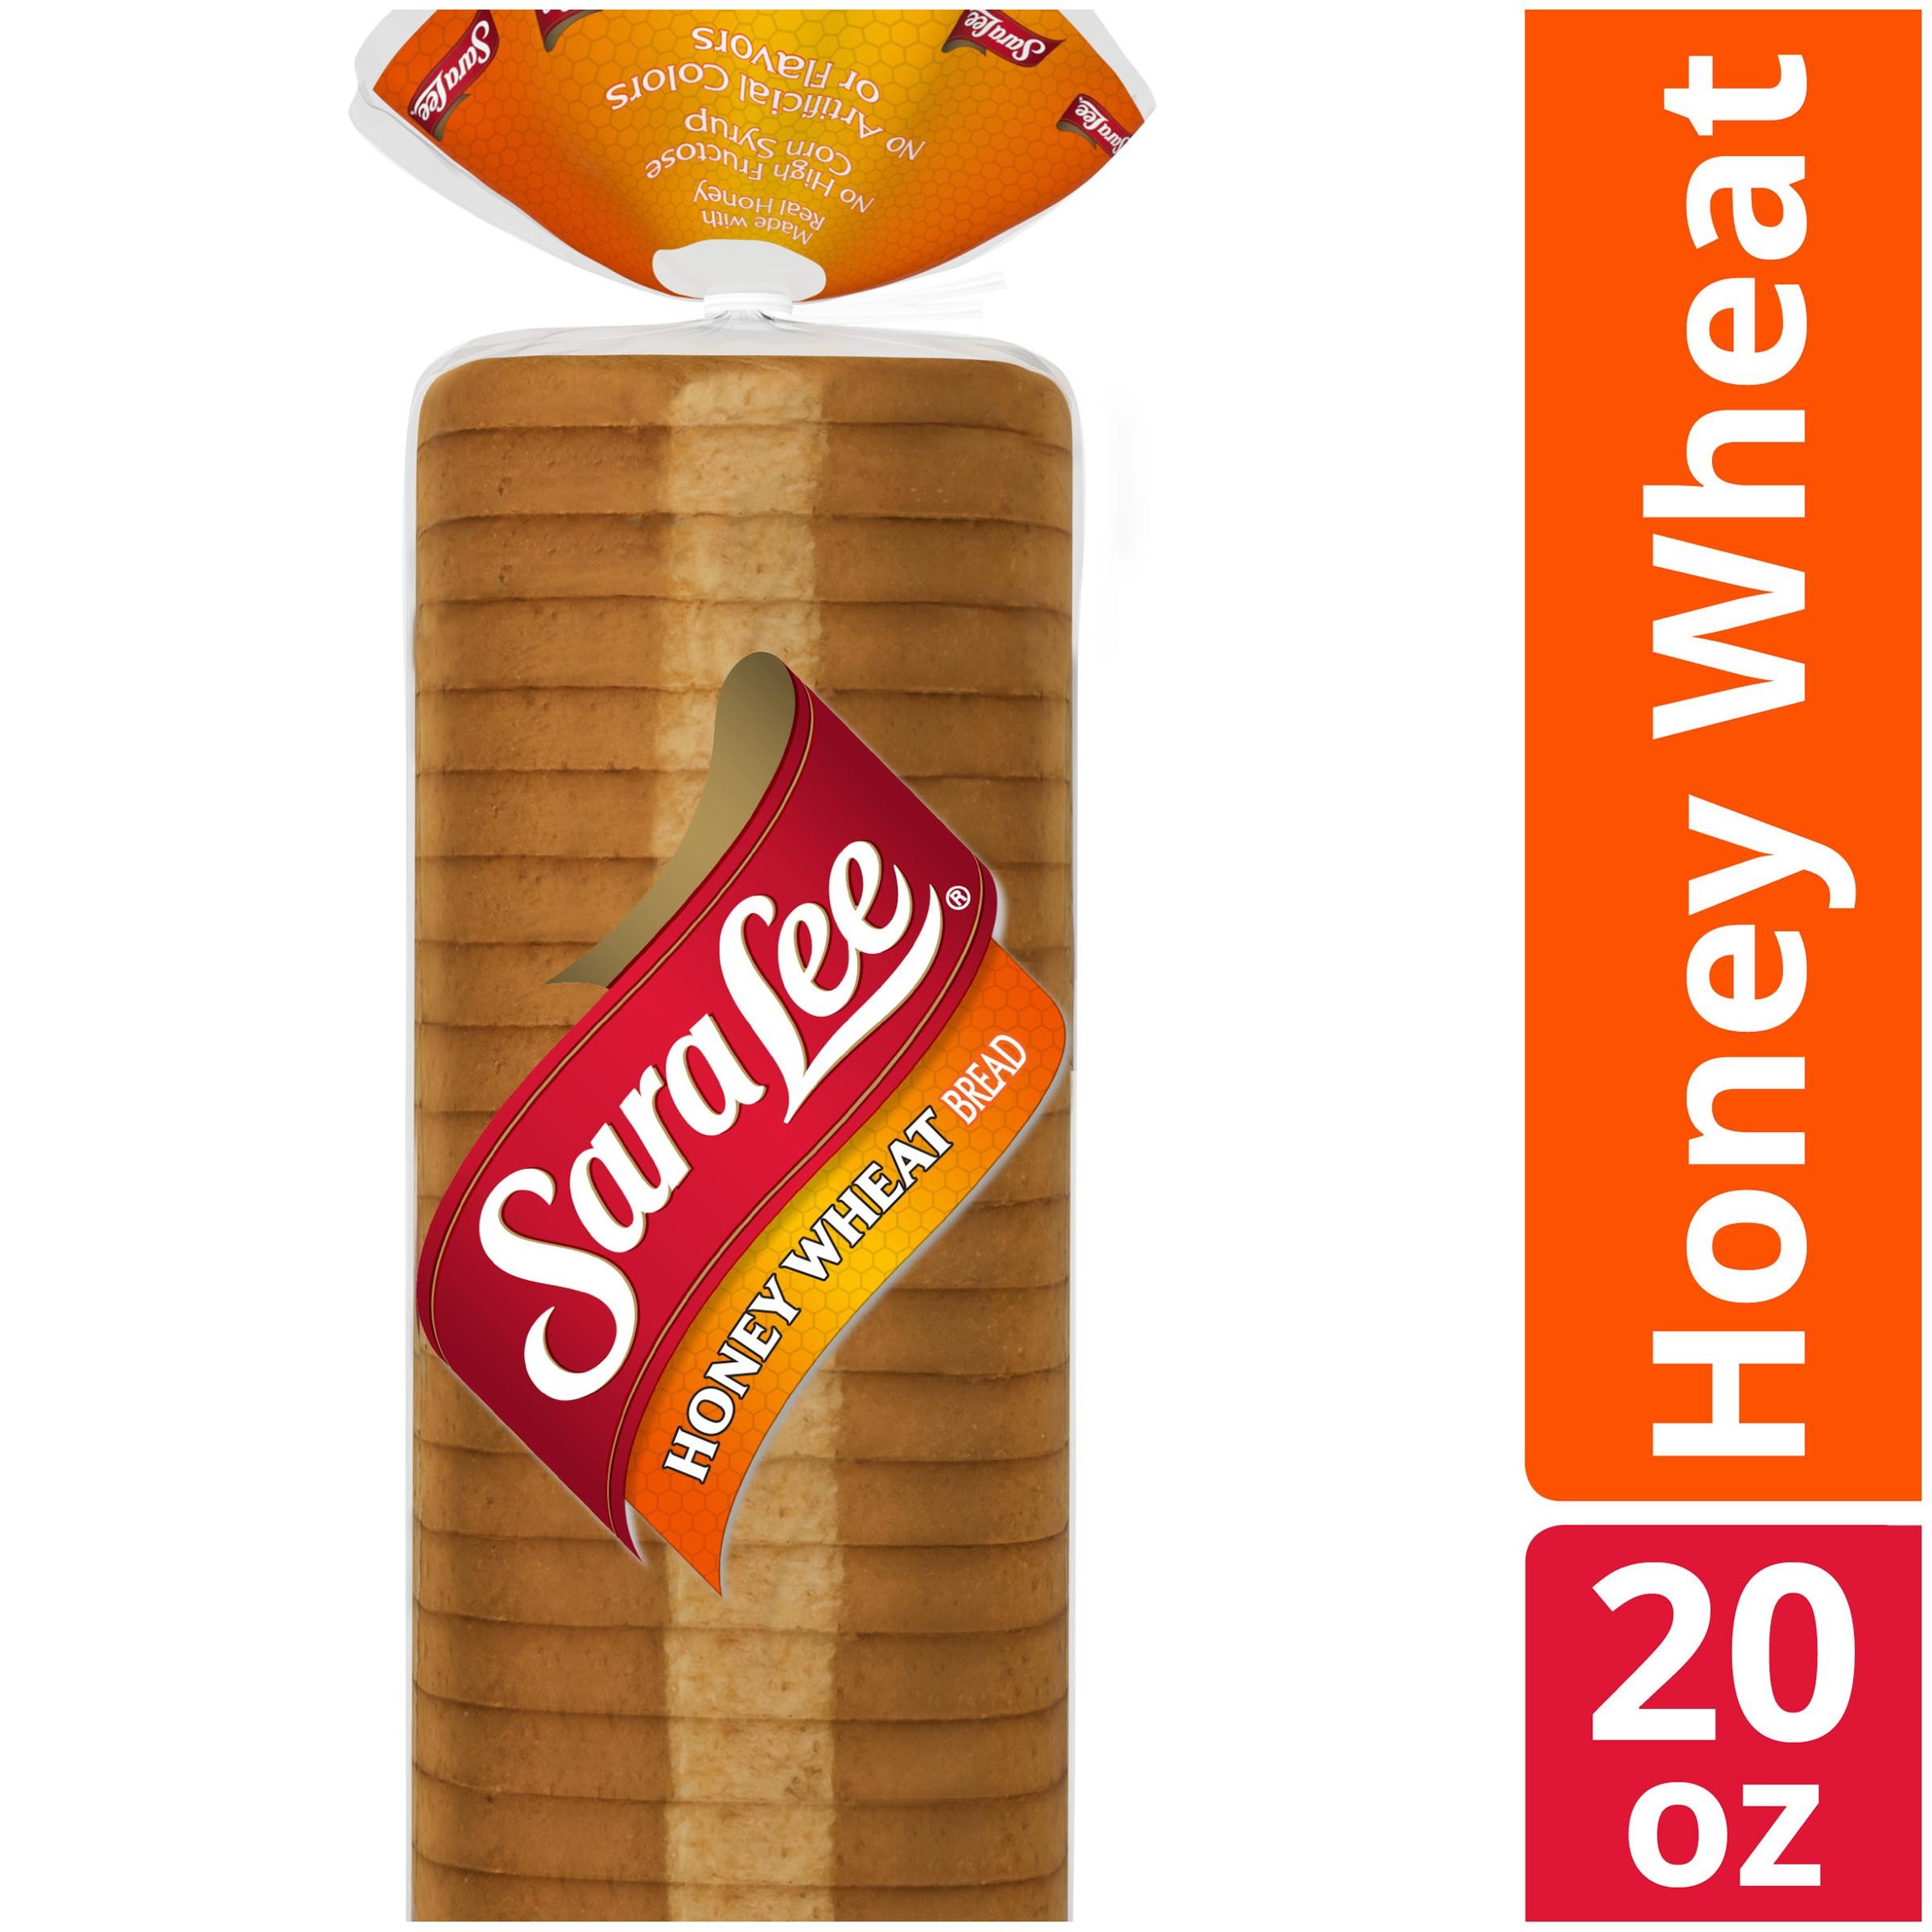 Sara Lee Bakery Honey Wheat Bread - 20.0 Oz